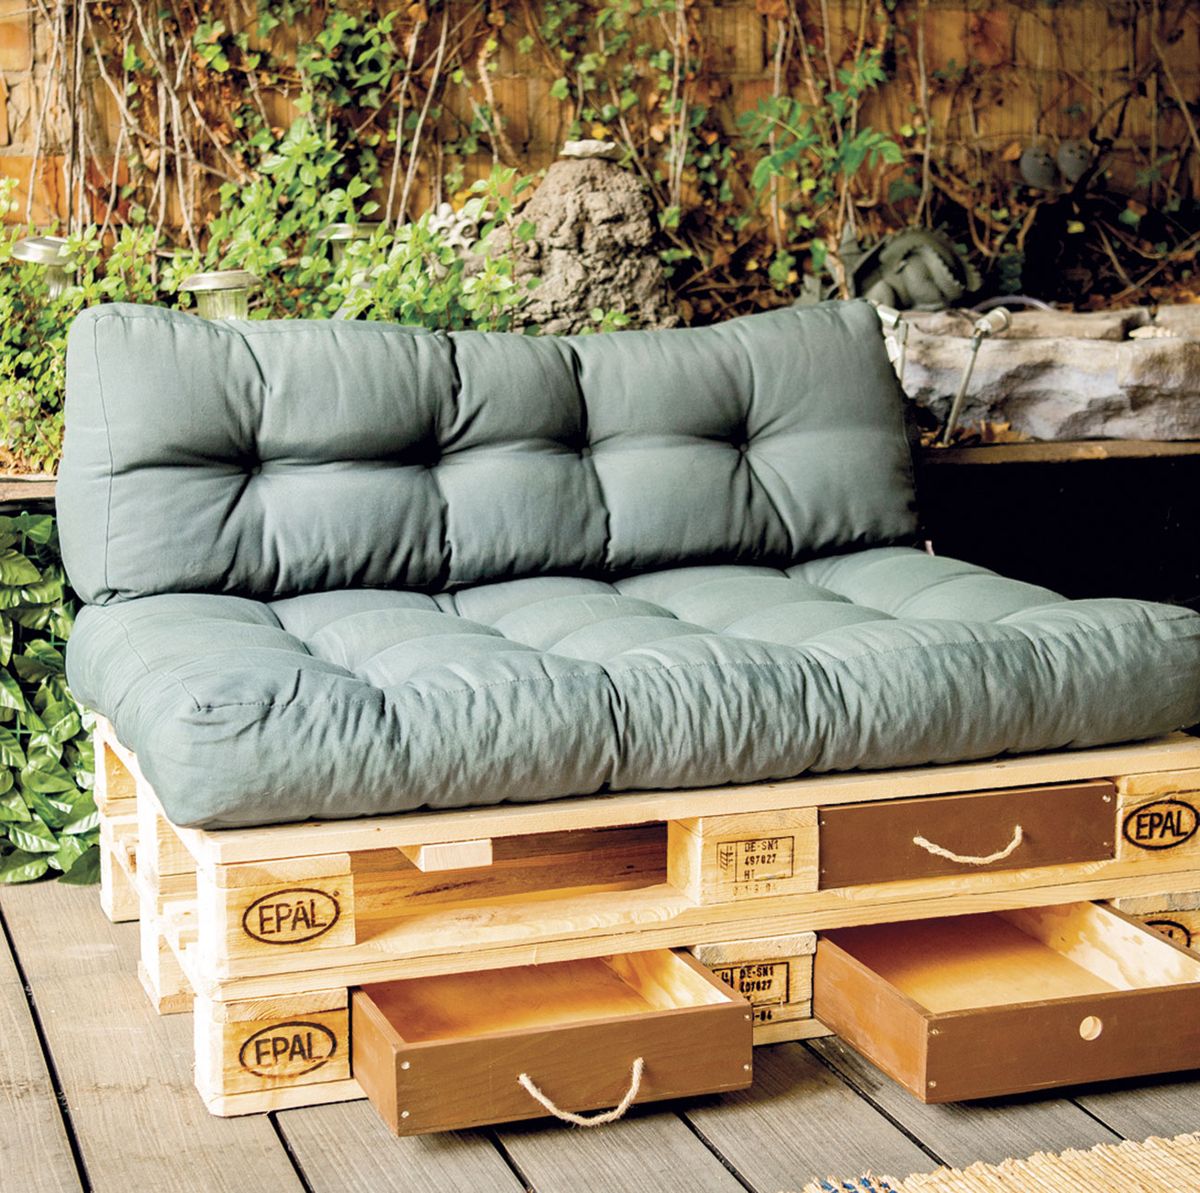 Baño estanteria original ideas de muebles hechos con palets muebles de  madera como hacer muebles de palets originales